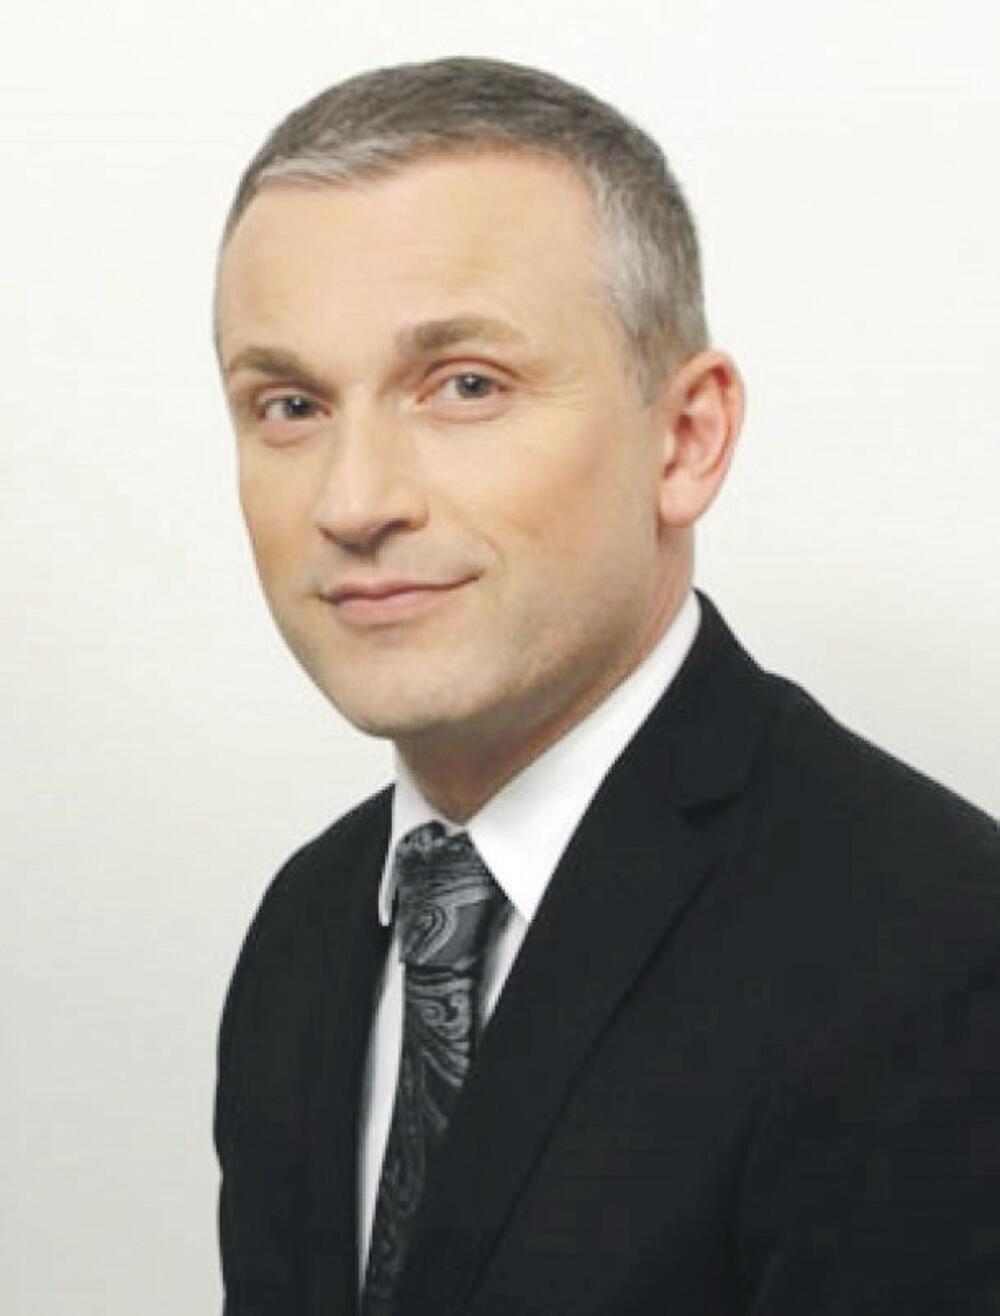 Džan Mark Kavčić (Novina)